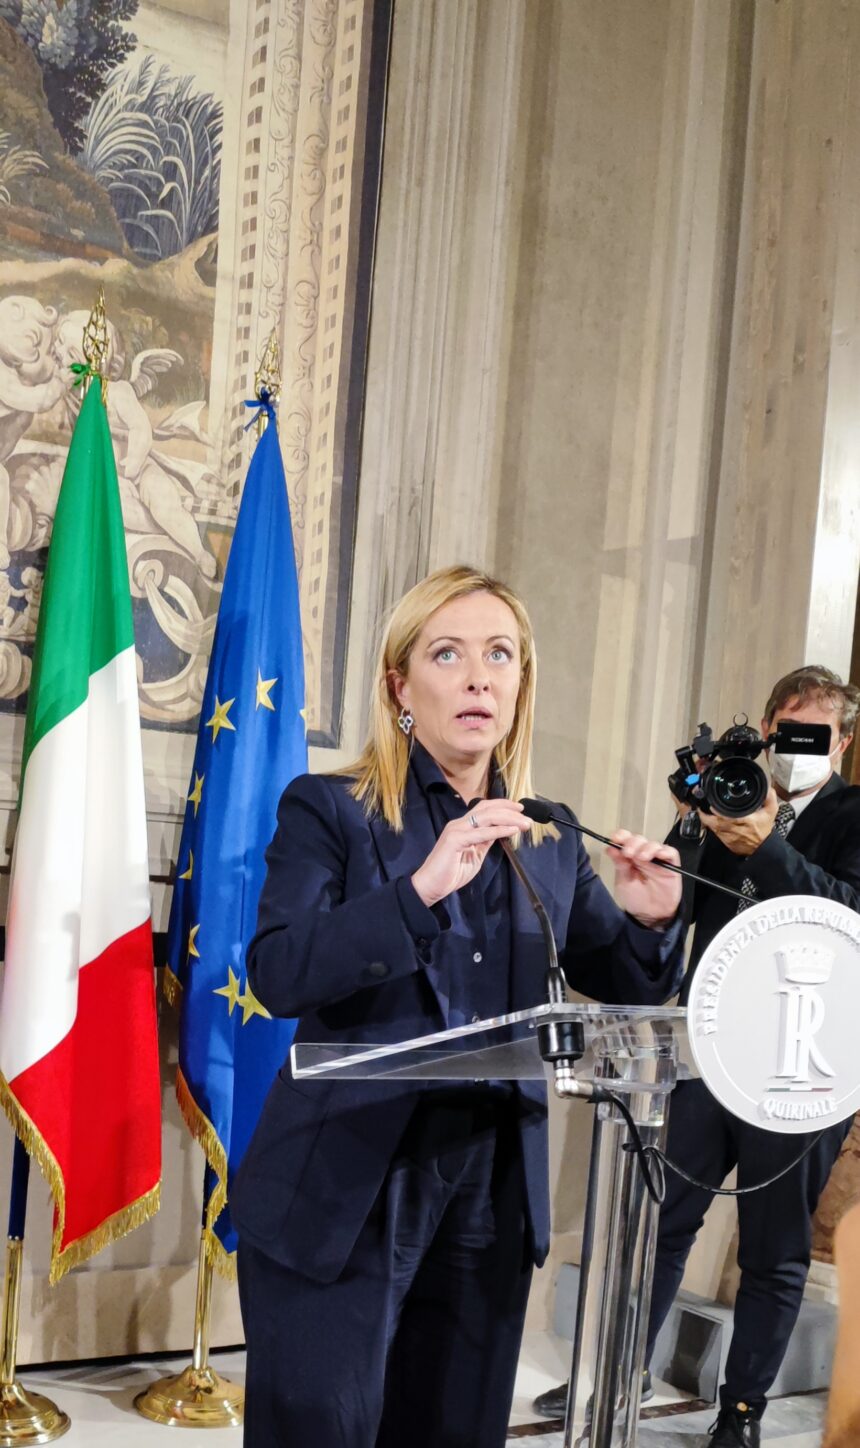 Il Premier Meloni:” Con il nuovo piano l’Italia diventerà  hub energetico del Mediterraneo per tutta l’Europa in un proficuo rapporto di cooperazione soprattutto con i paesi africani”.